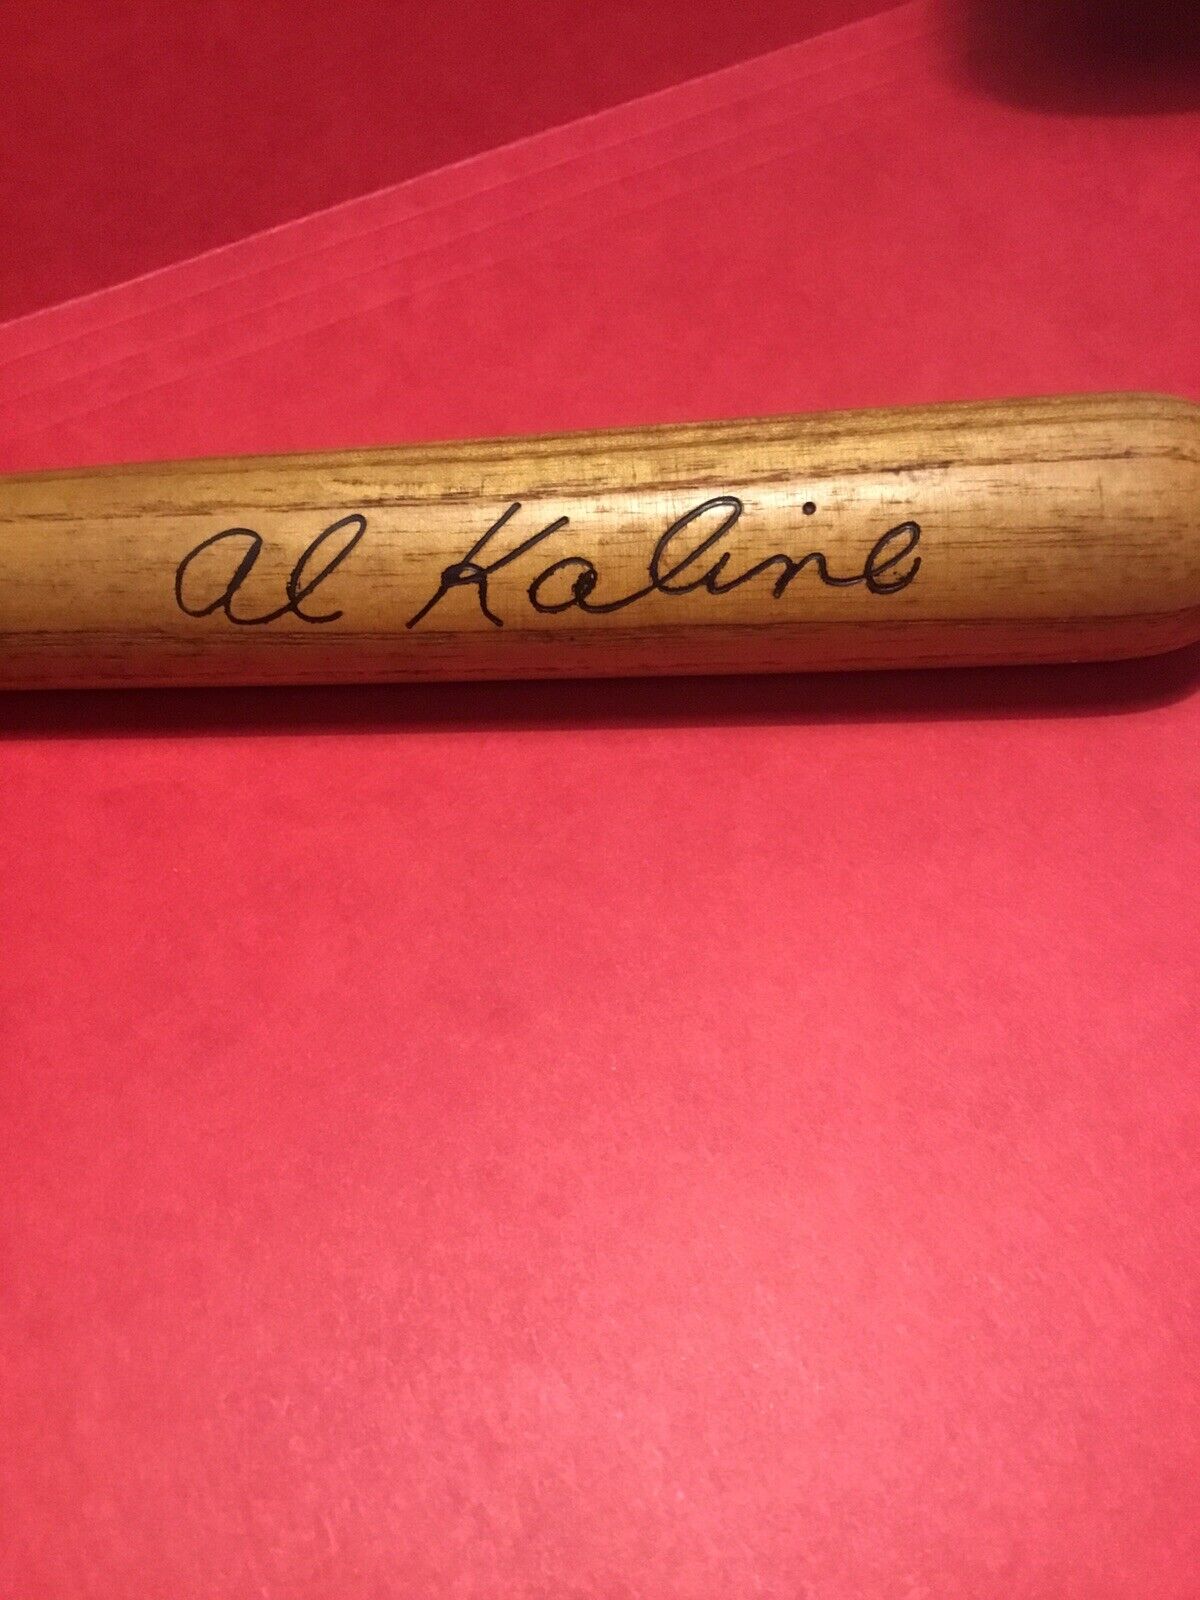 Detroit Tigers Al Kaline Souvenir Bat Louisville Slugger 15 Inch Very Good 60s